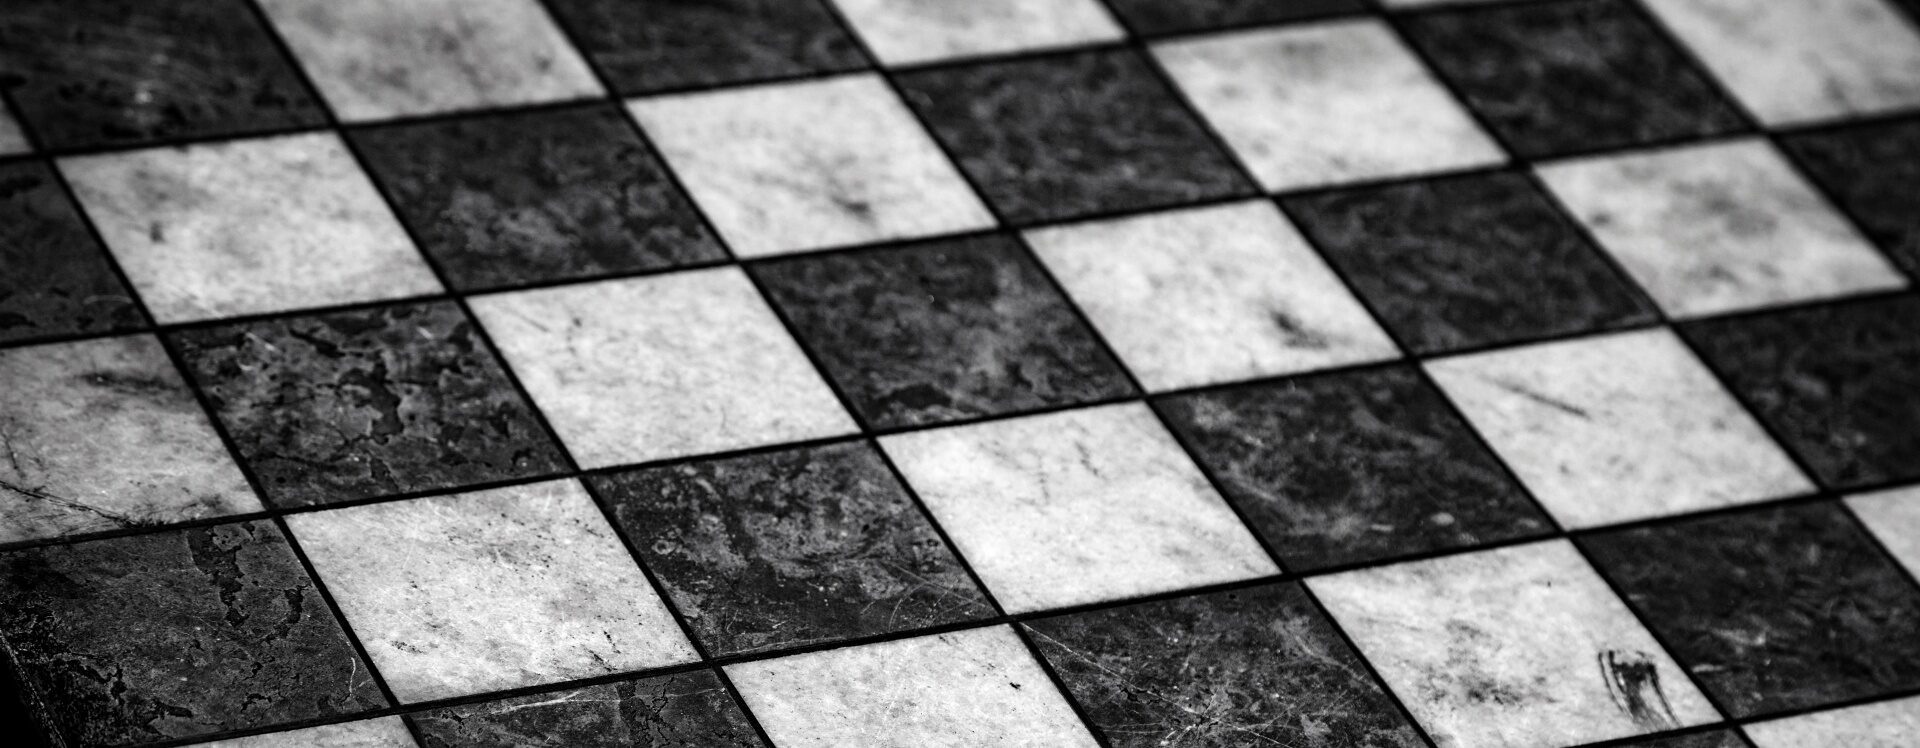 Ver categoría de ajedrez de mármol